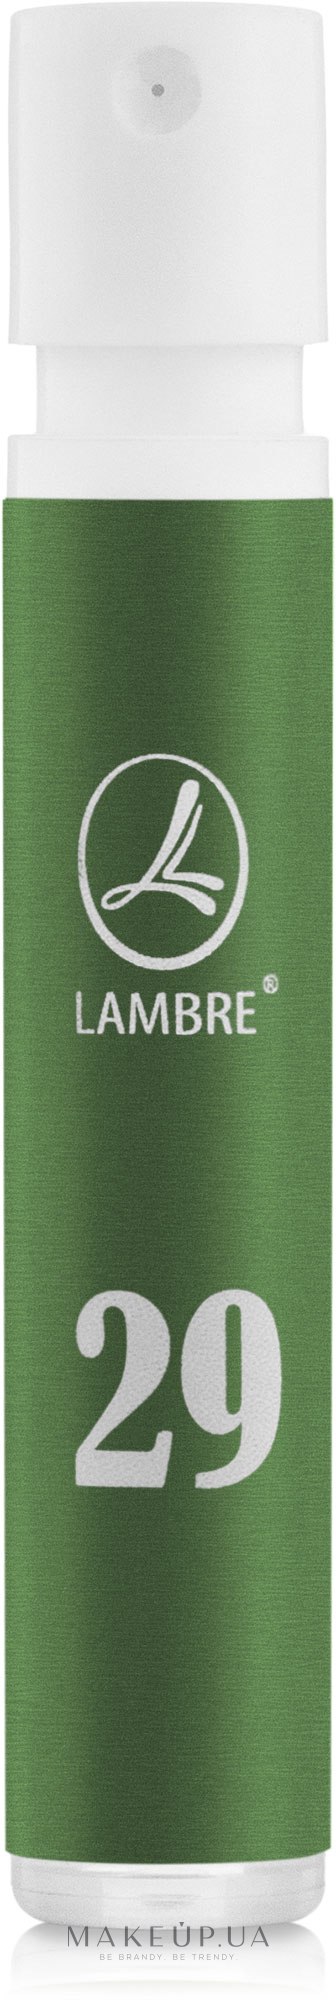 Lambre 29 - Туалетная вода (пробник) — фото 1.2ml